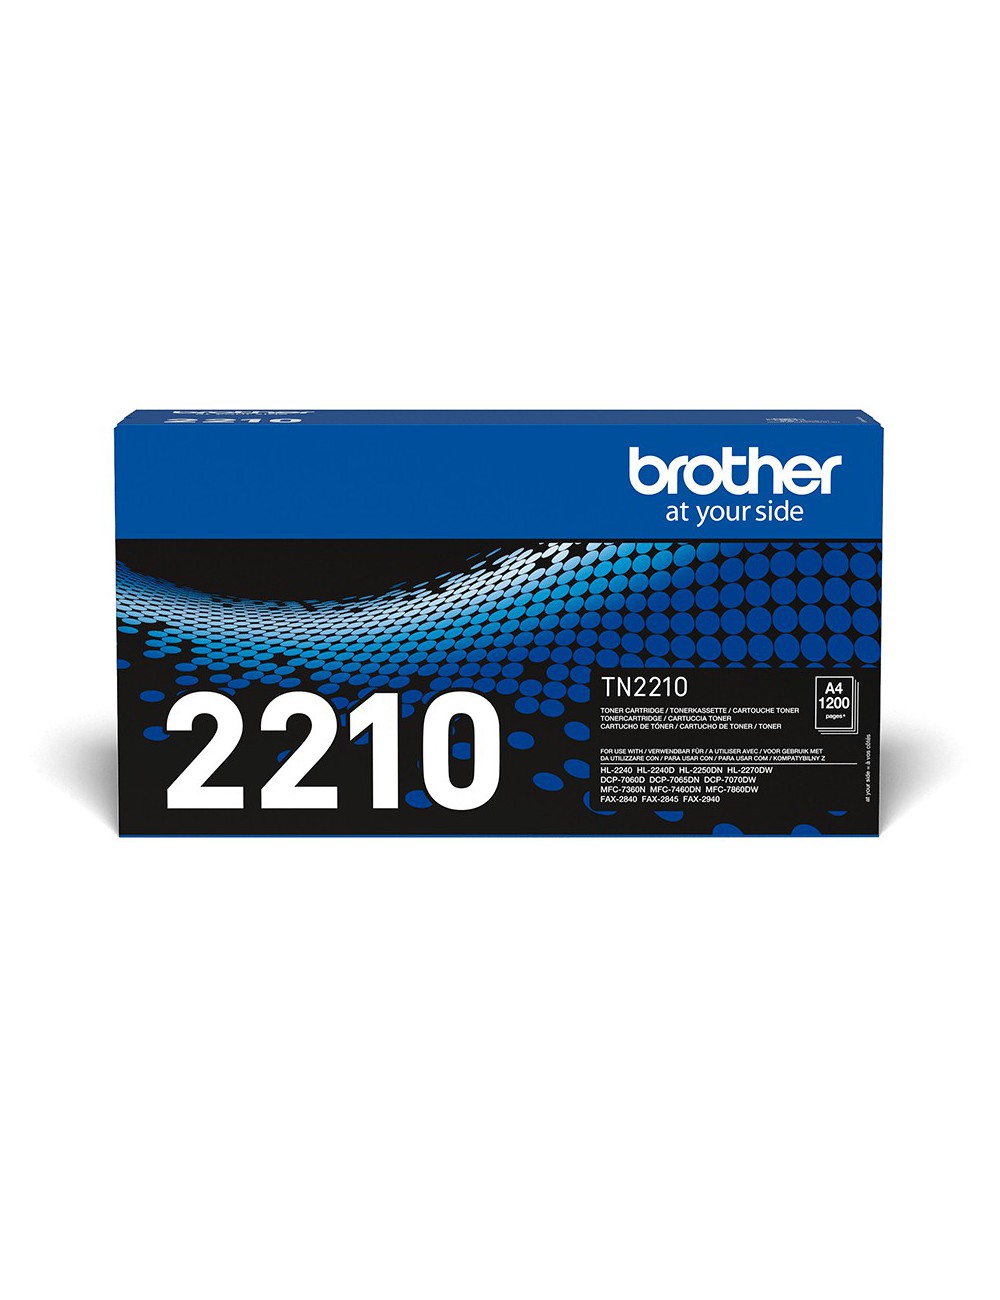 Brother TN-2210 cartucho de tóner 1 pieza(s) Original Negro